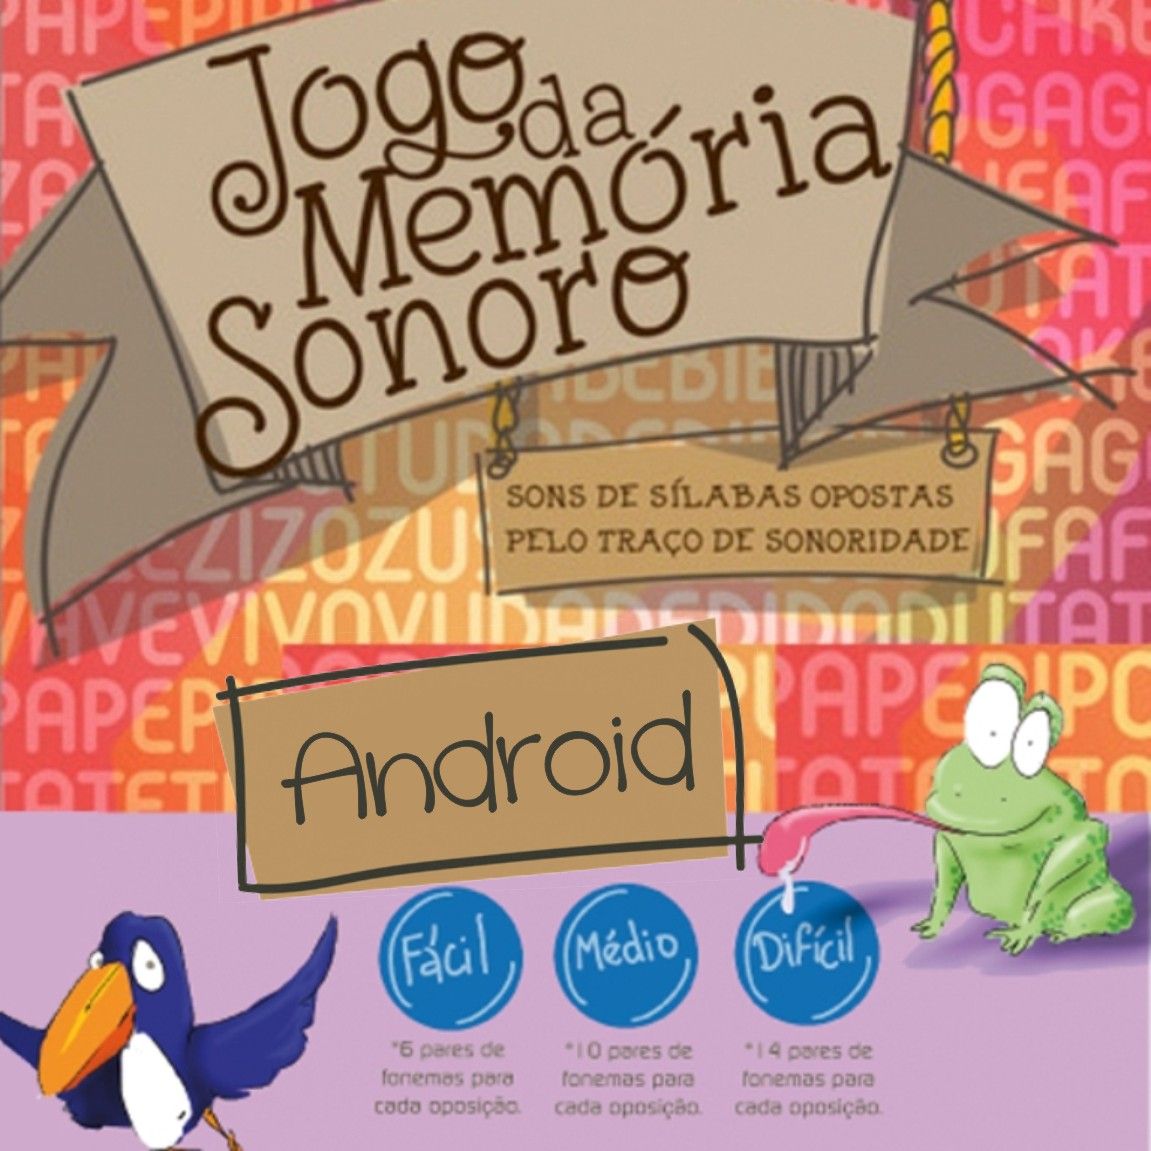 Memorei Mais: Jogo da Memória - Apps on Google Play